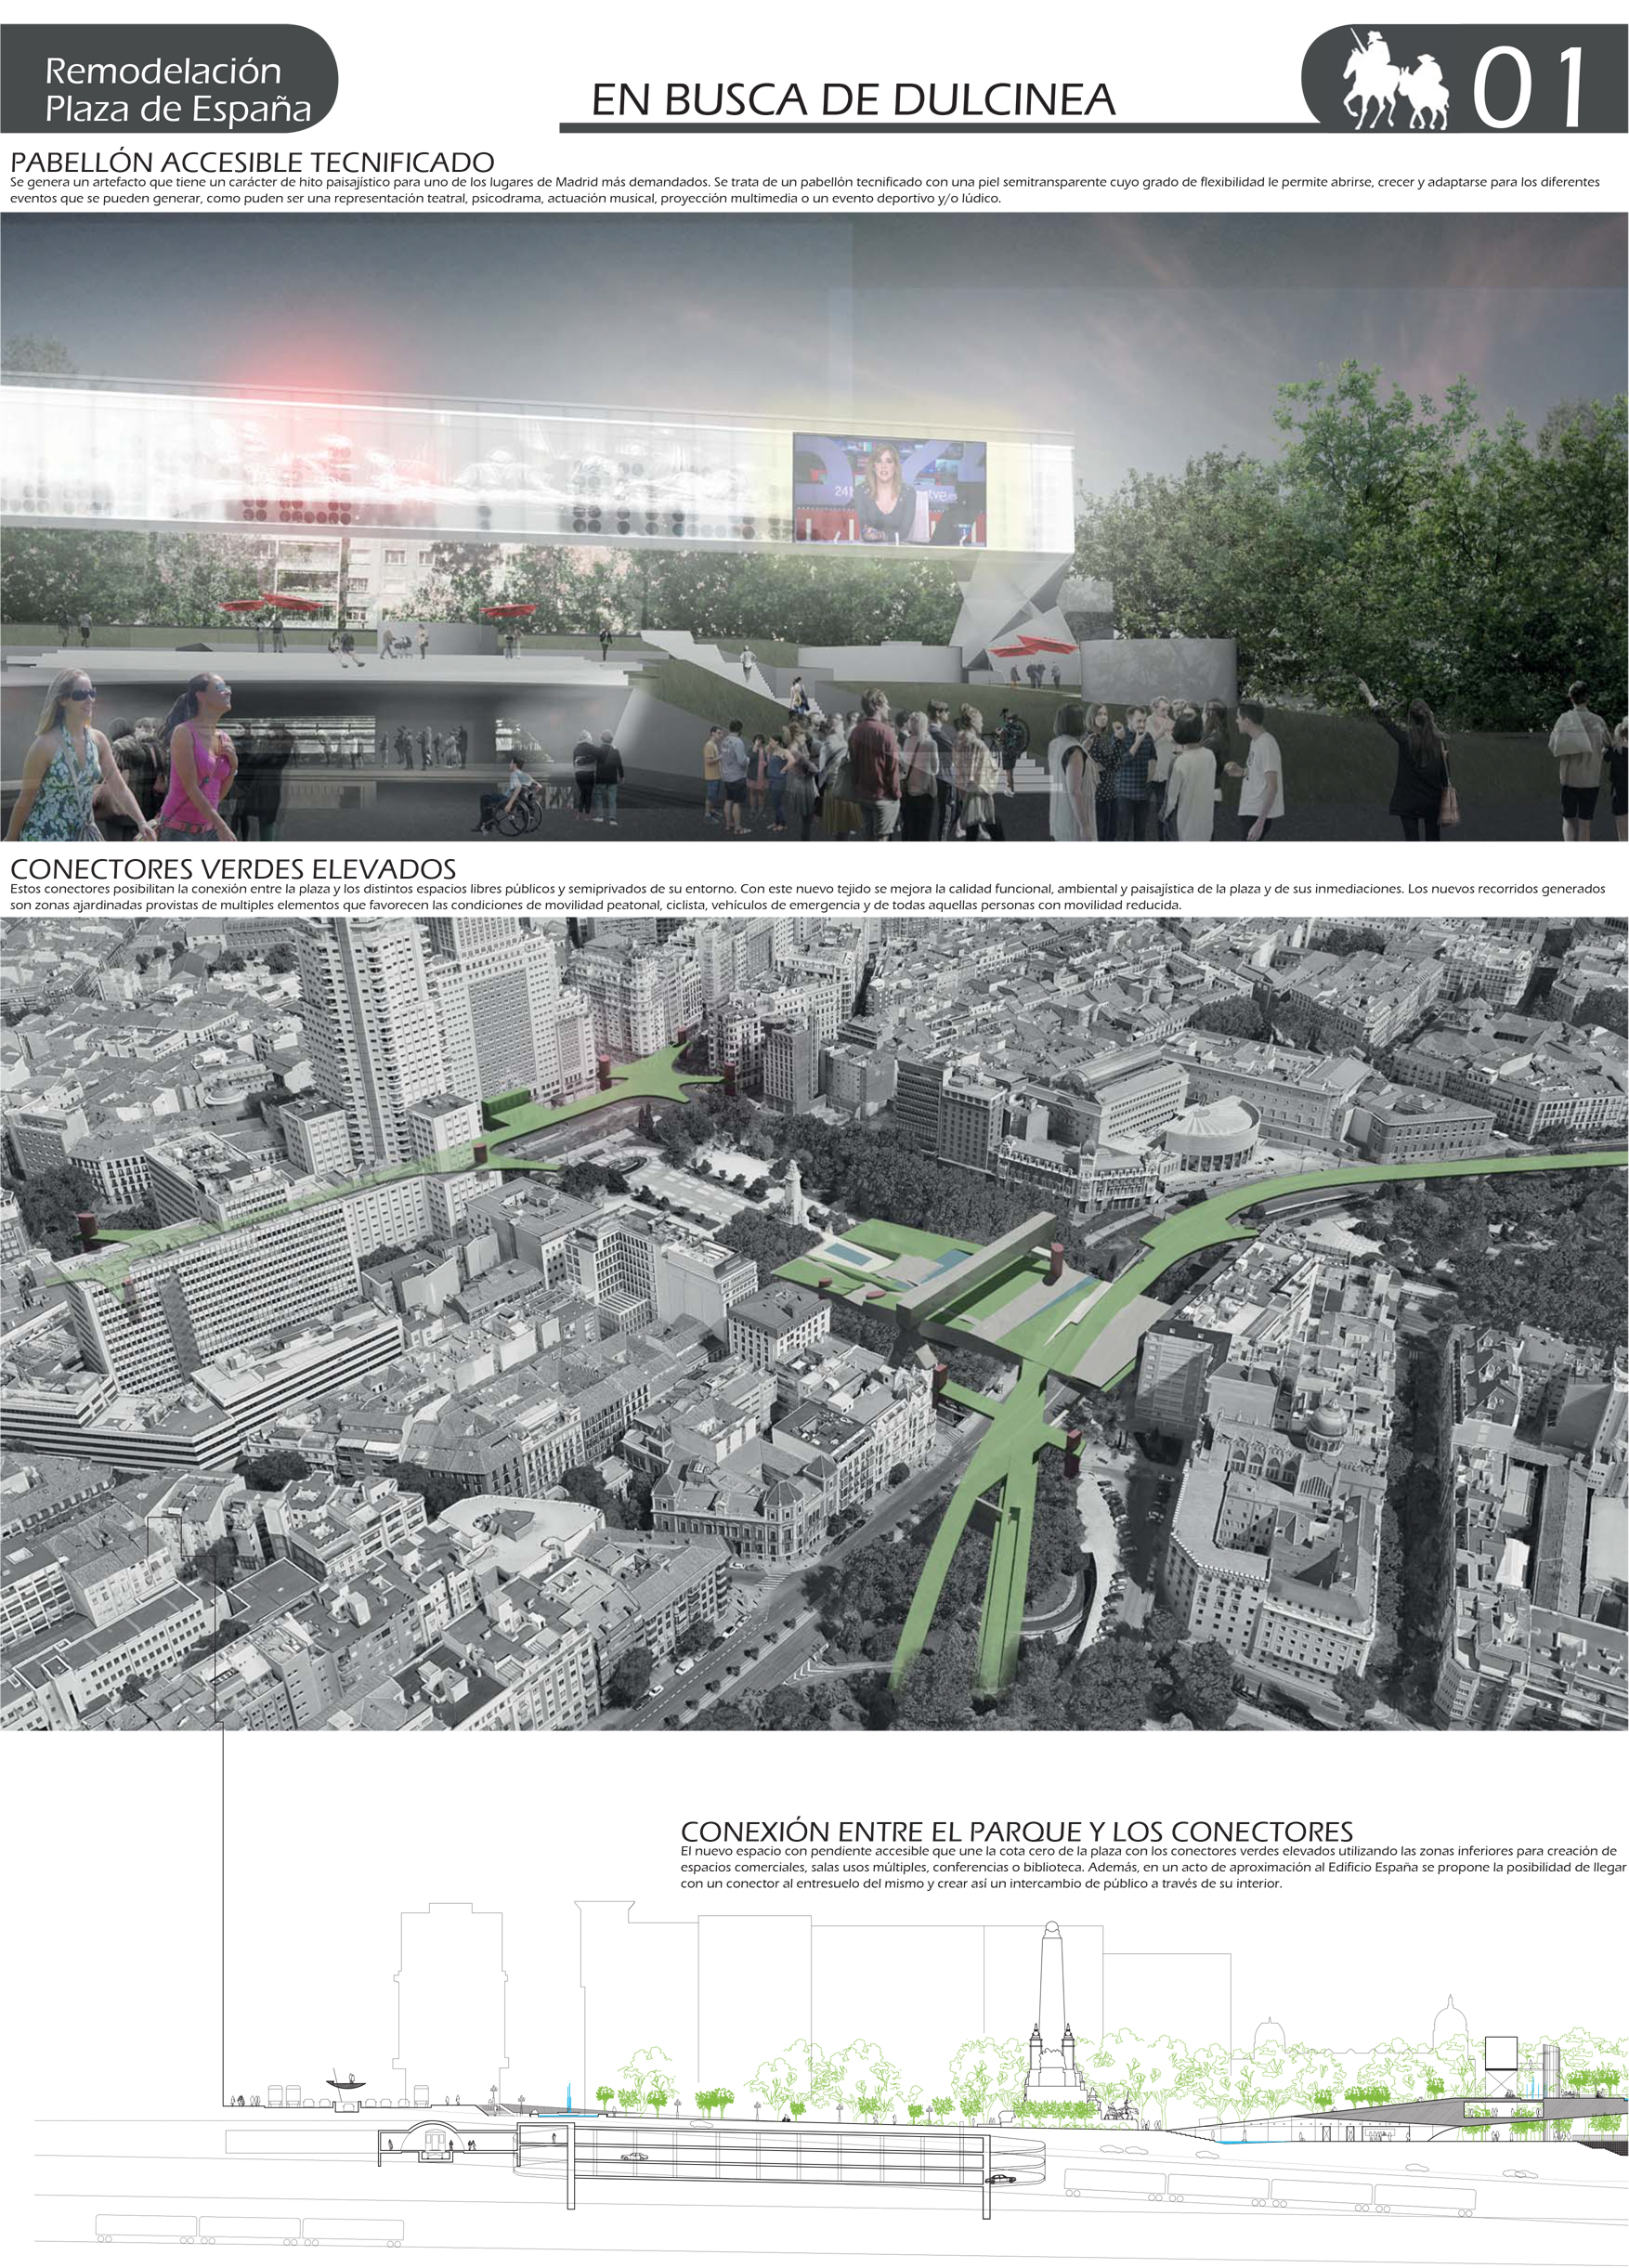 Proyecto 39 para la Remodelación de Plaza España: EN BUSCA DE DULCINEA